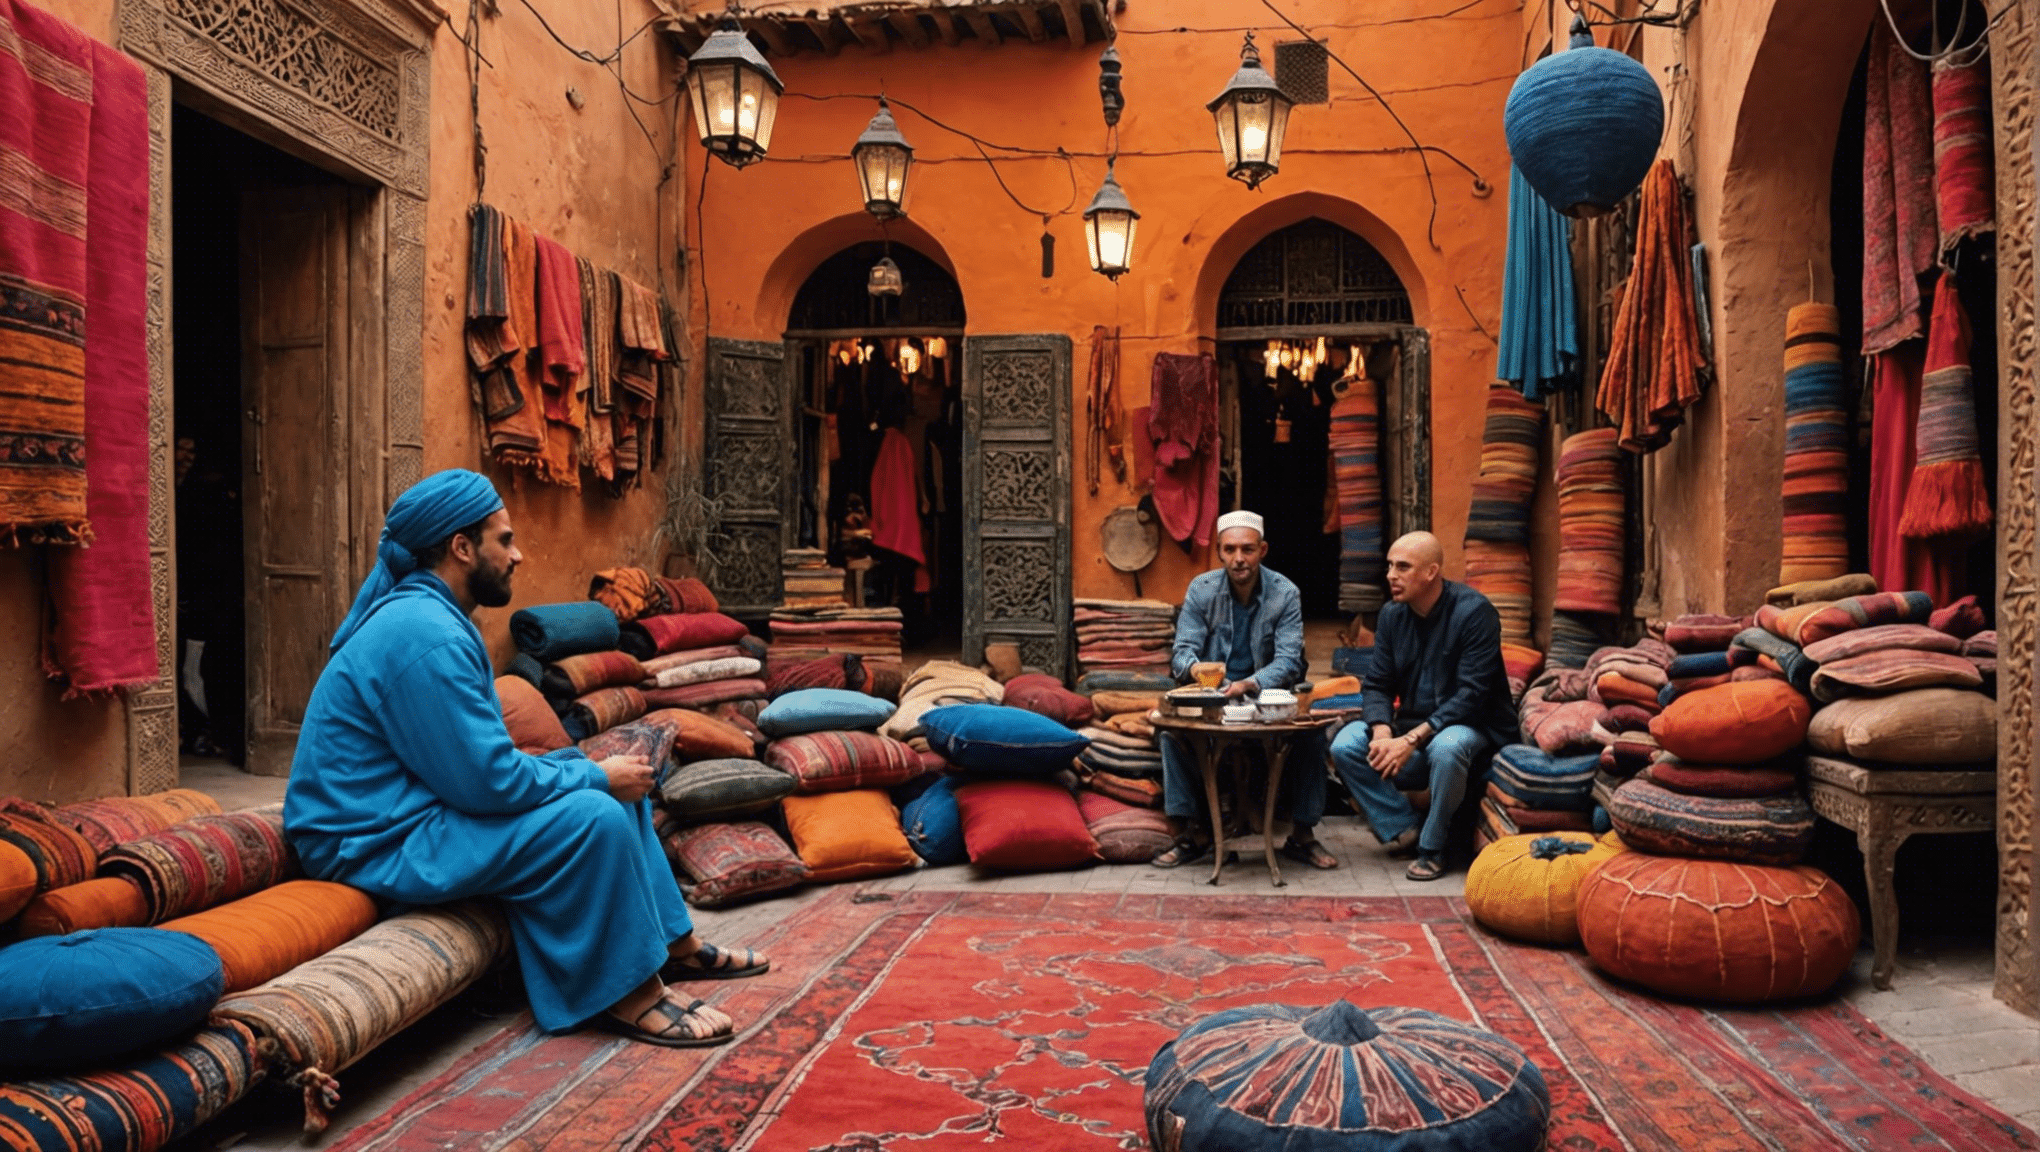 Entdecken Sie das ultimative Abenteuer-Reiseziel und entdecken Sie die lebhaften Souks und exotischen Teppiche einer marokkanischen Stadt.